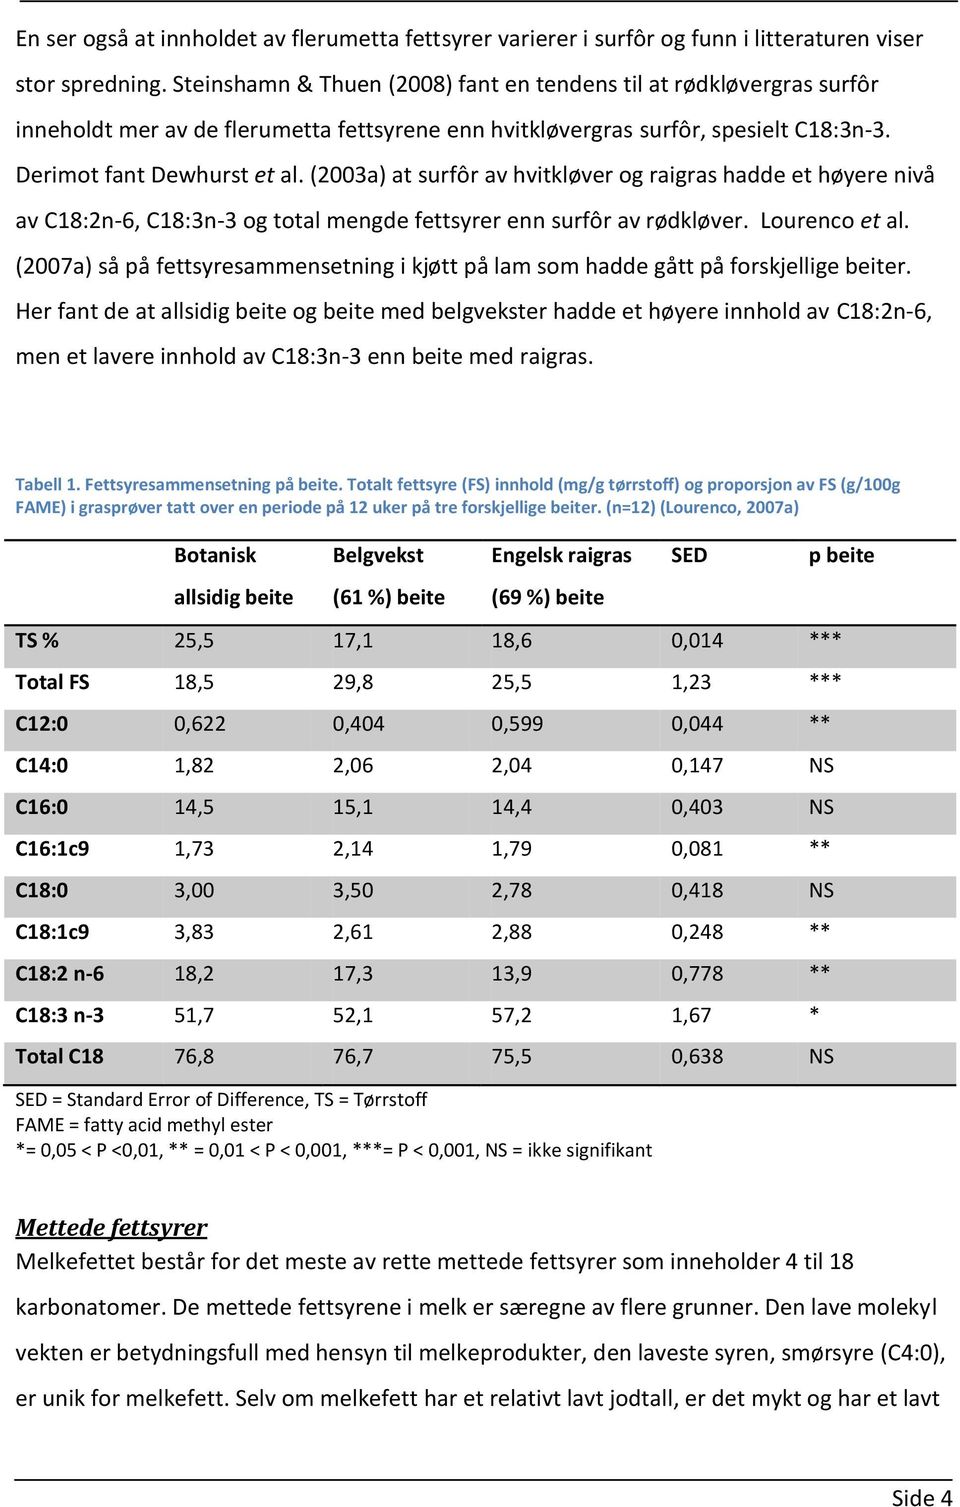 (2003a) at surfôr av hvitkløver og raigras hadde et høyere nivå av C18:2n-6, C18:3n-3 og total mengde fettsyrer enn surfôr av rødkløver. Lourenco et al.